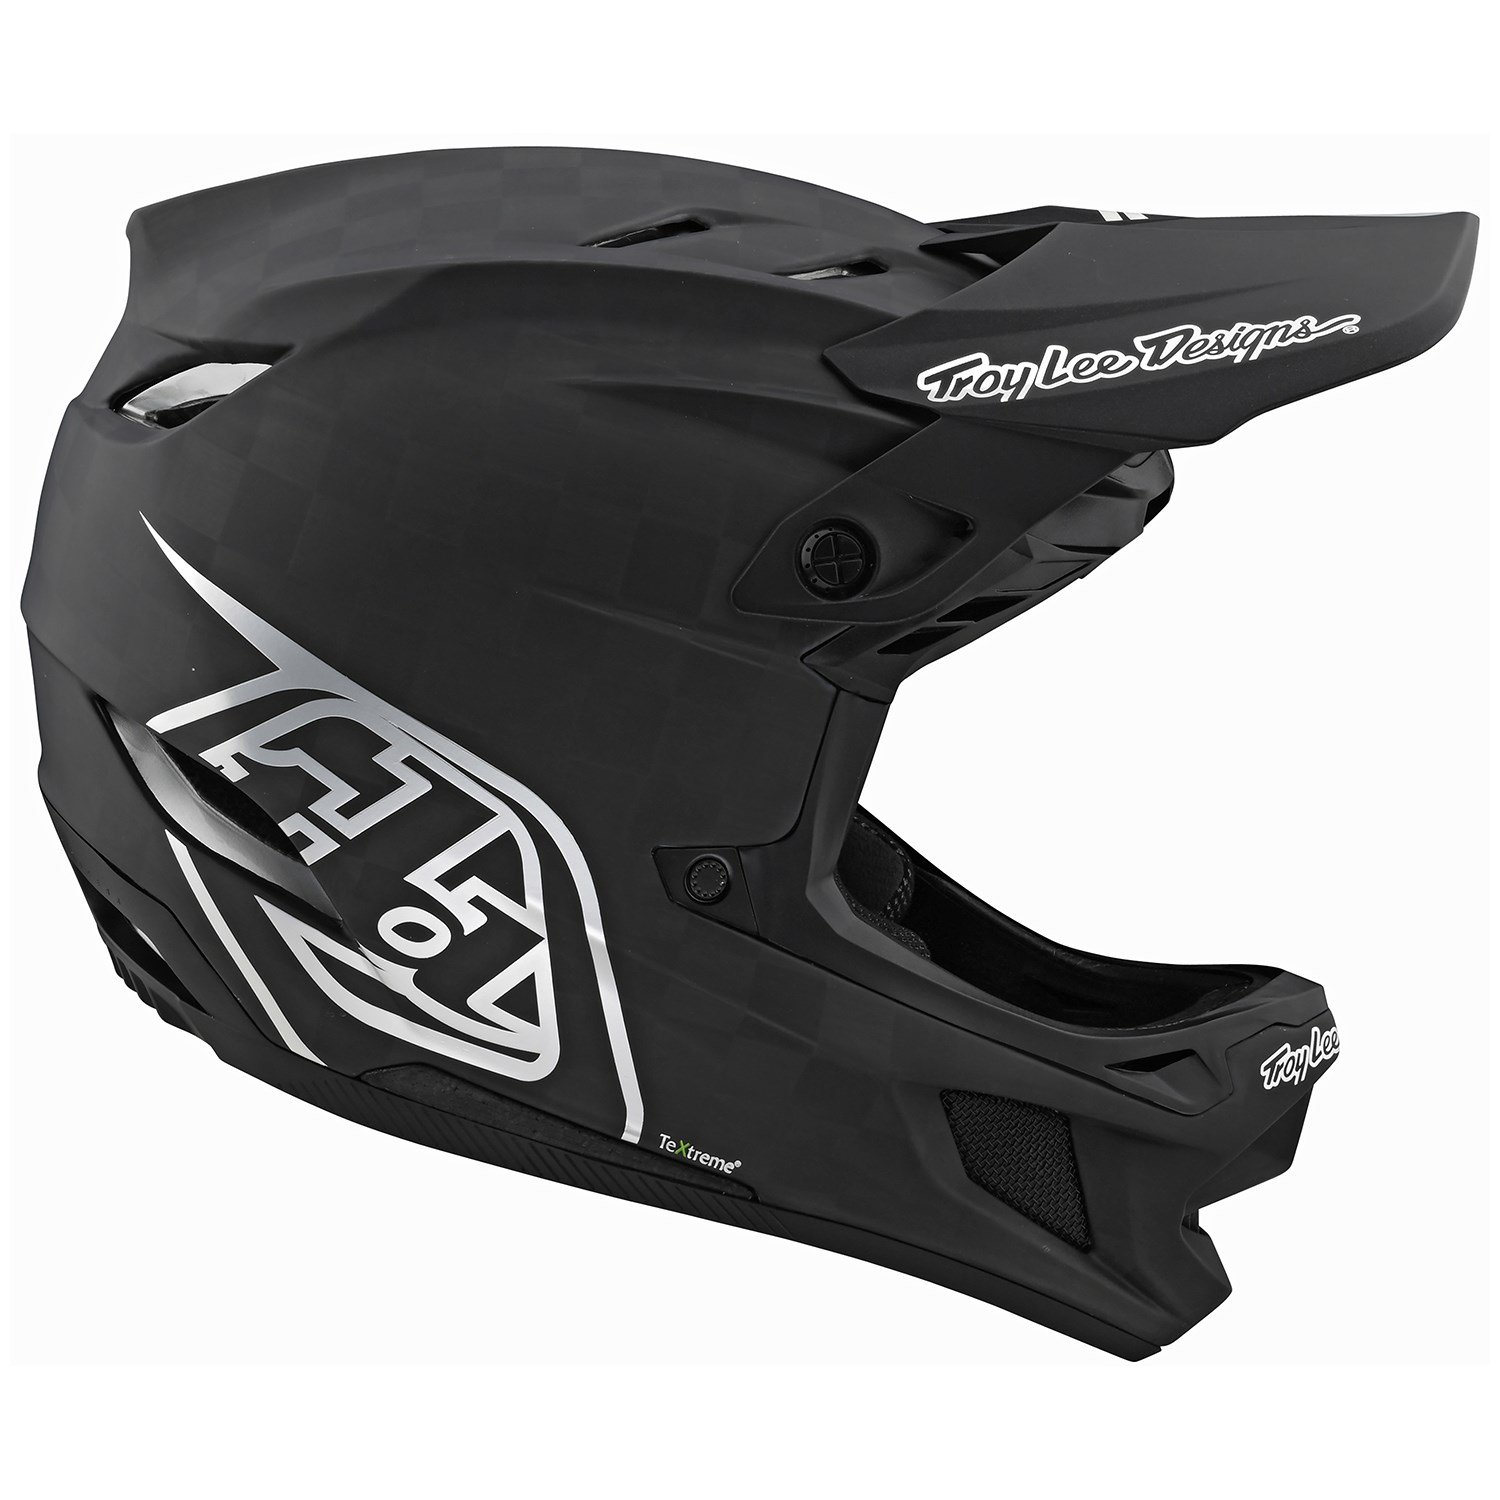 https://images.evo.com/imgp/zoom/172481/699134/troy-lee-designs-d4-carbon-mips-bike-helmet-.jpg